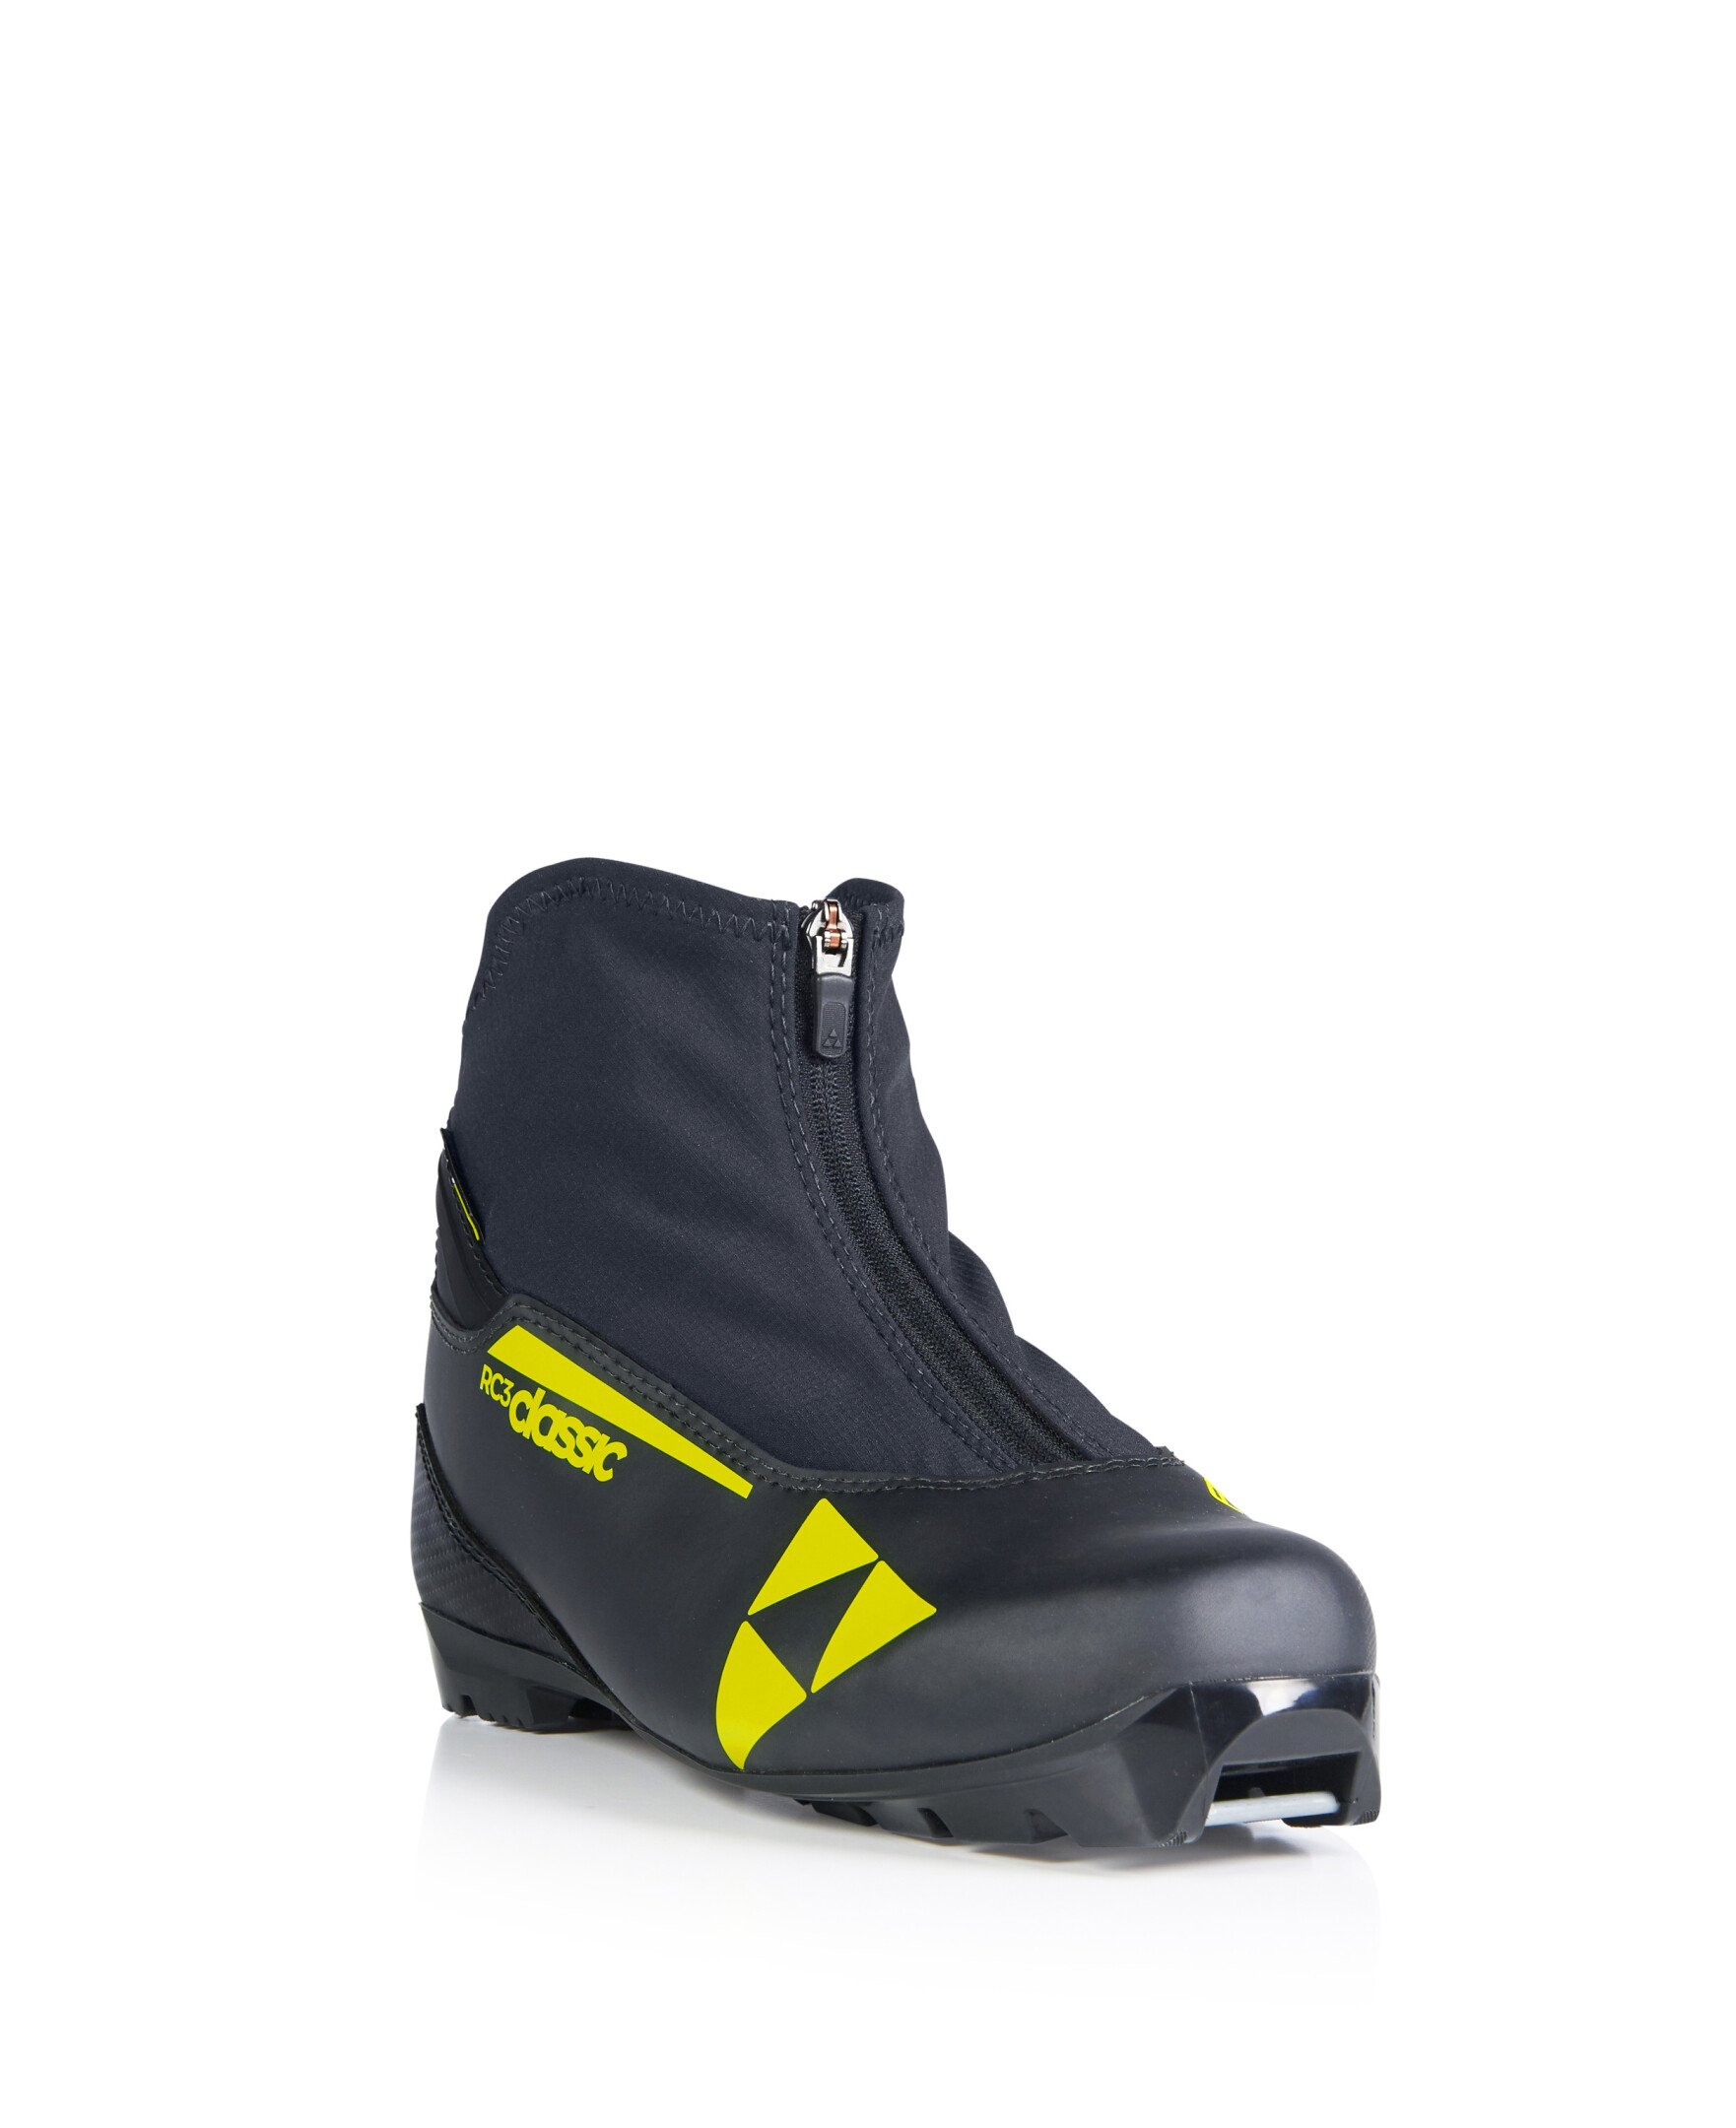 Ботинки лыжные FISCHER RC3 CLASSIC